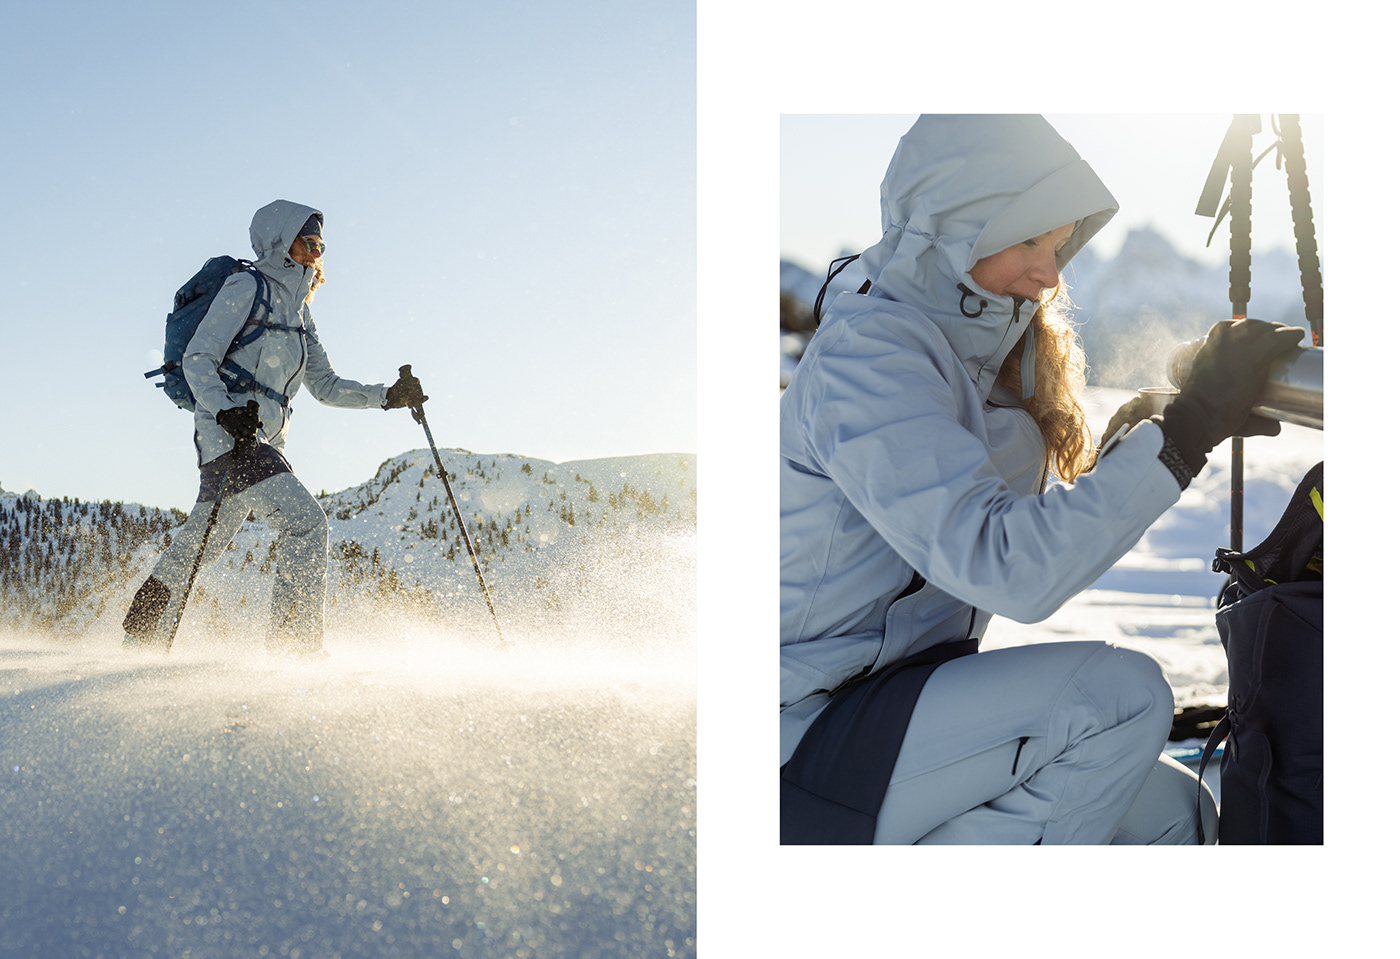 dolomites mountains outdoor advertising Photography  Ski Skimountaineering skitouring sport winter woman